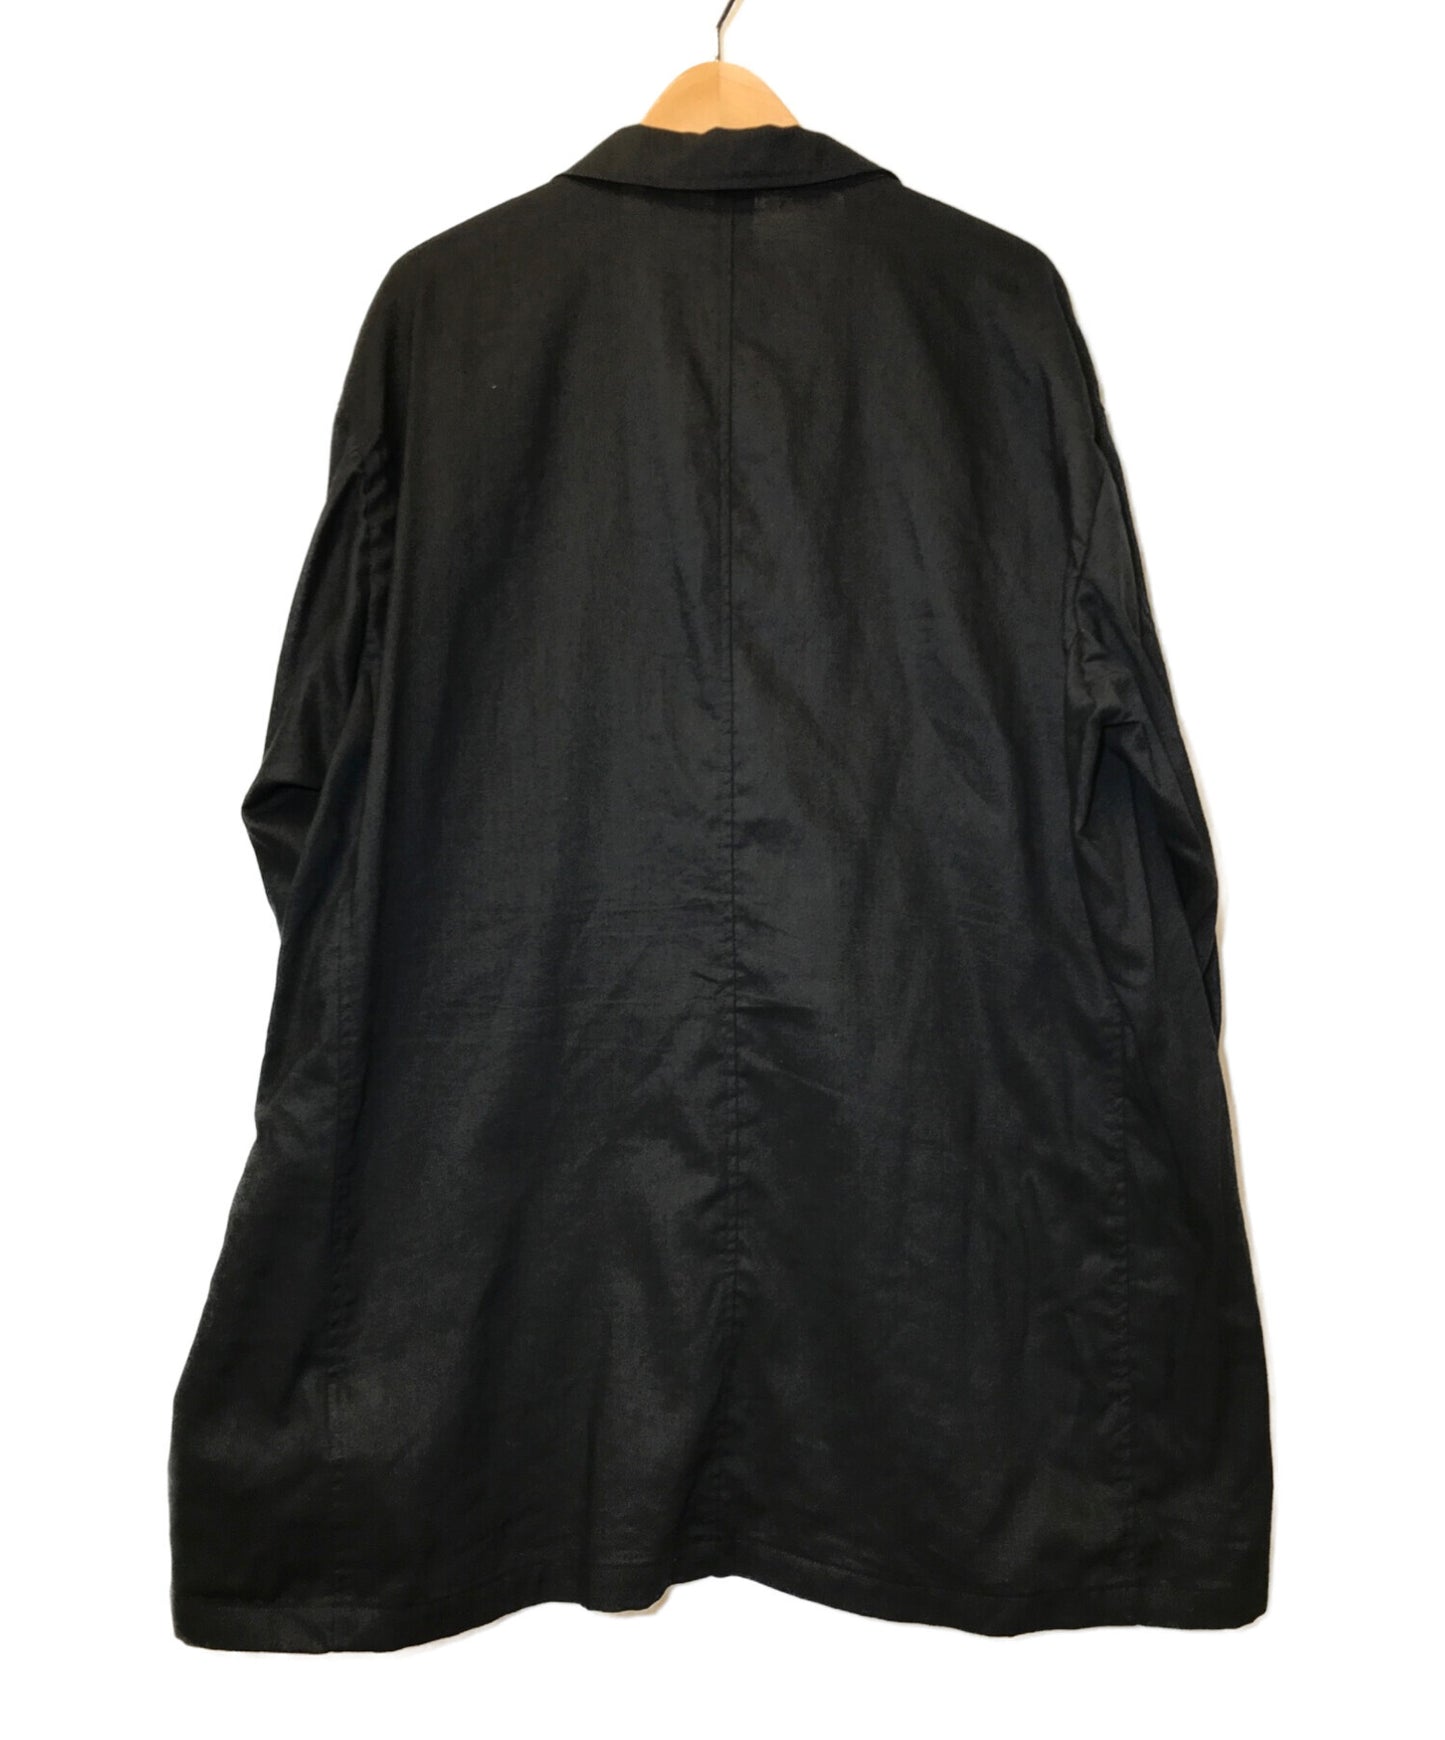 鄰里服務夾克夾克量身定制的夾克無建築夾克211AQNH-JKM02